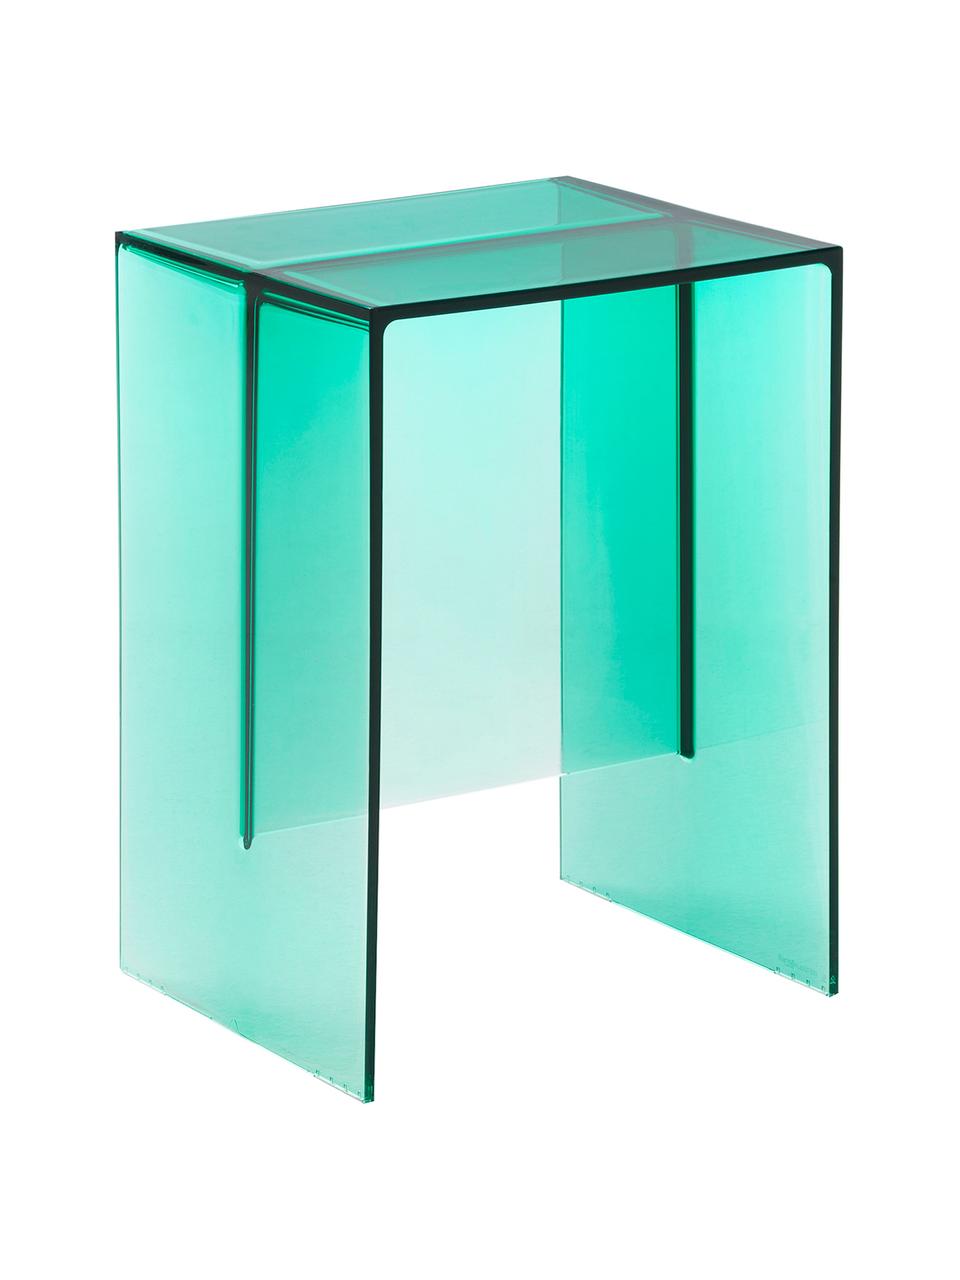 Stołek/stolik pomocniczy Max-Beam, Barwiony, transparentny polipropylen z certyfikatem Greenguard, Seledynowy, S 33 x W 47 cm